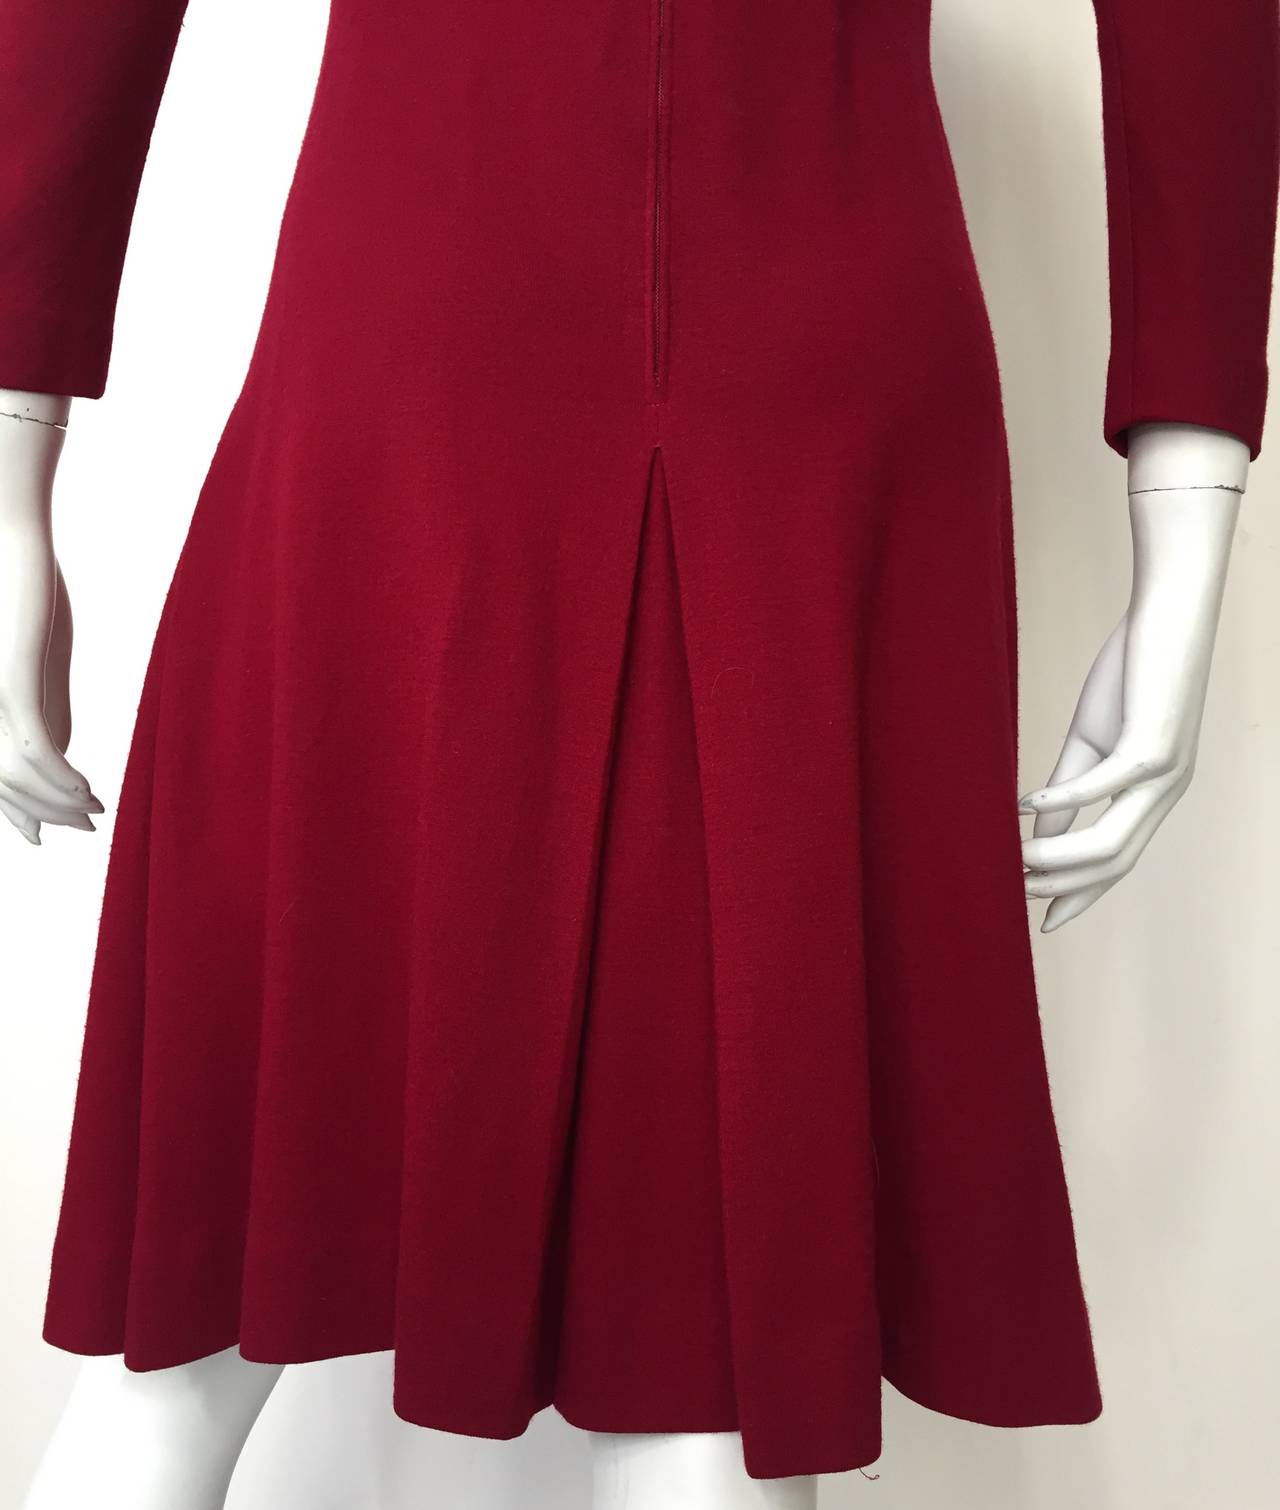 Anne Fogarty 1960s Wool Dress Size 6. 2